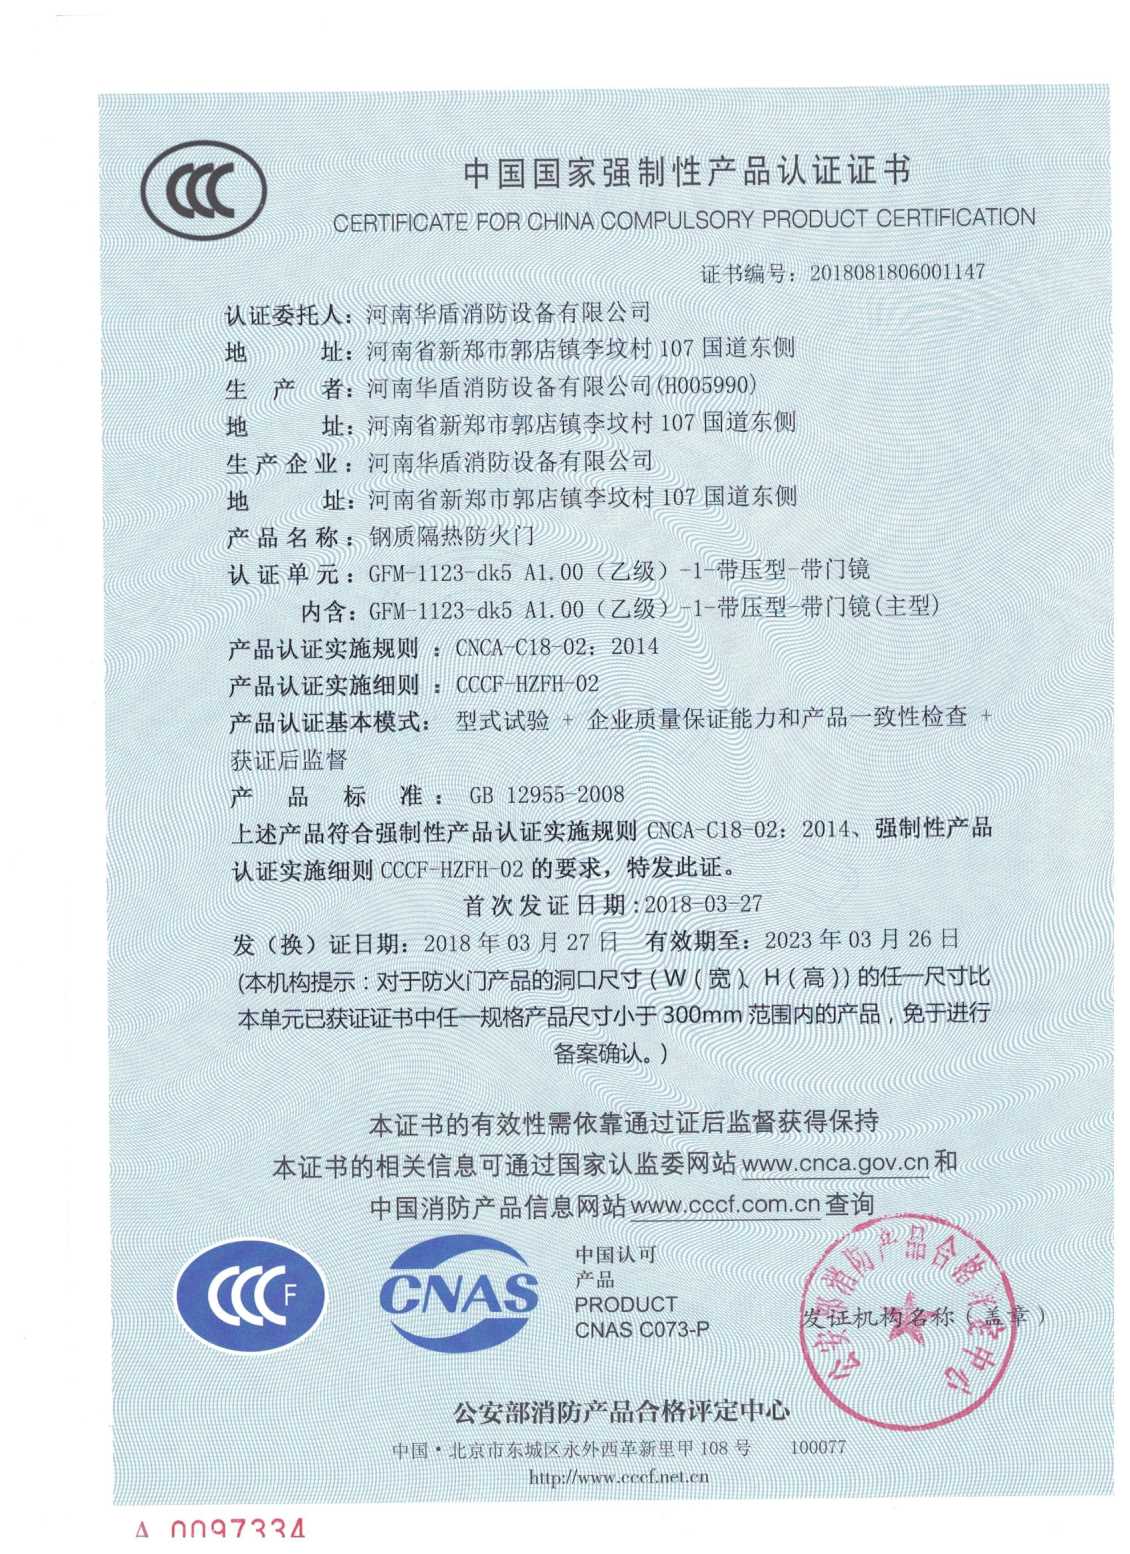 信阳GFM-1123-dk5A1.00(乙级）-1-3C证书